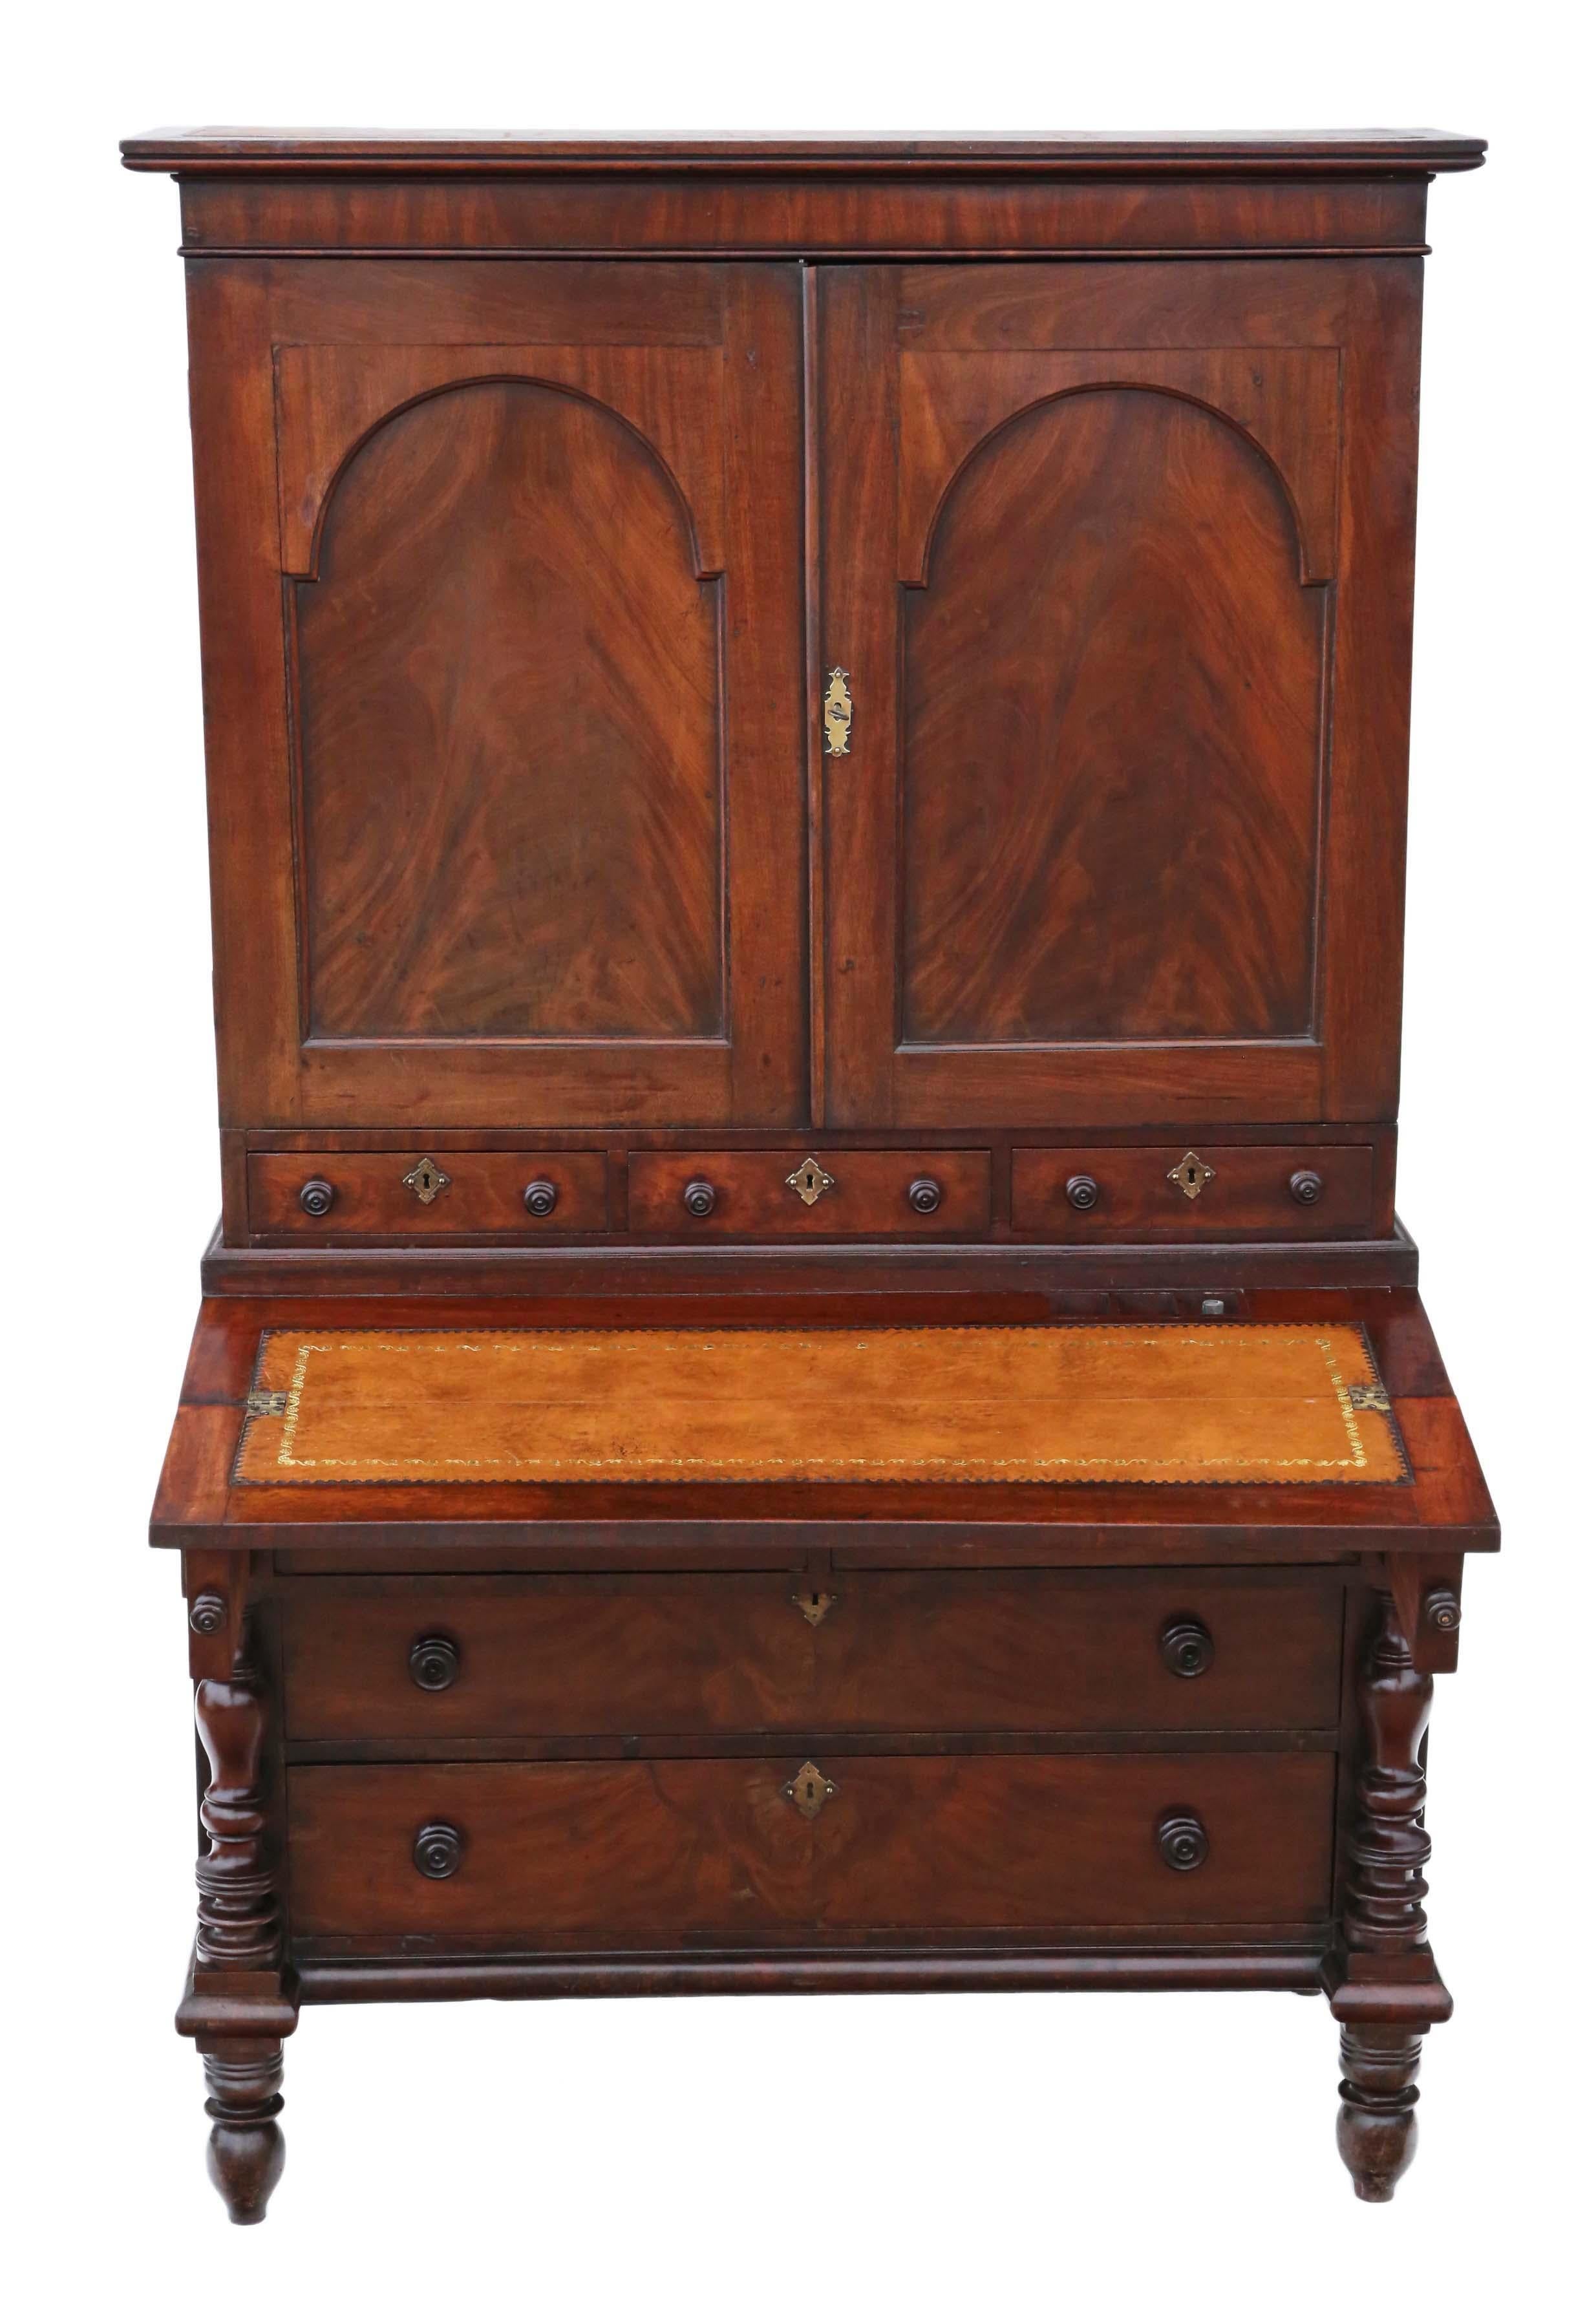 Ancienne armoire secrète de gouvernante géorgienne, meuble bibliothèque, fabriqué à l'époque de George III, vers 1800. Également connue sous le nom d'armoire de succession, cette rare pièce d'époque est d'une qualité exceptionnelle.

Robuste et bien